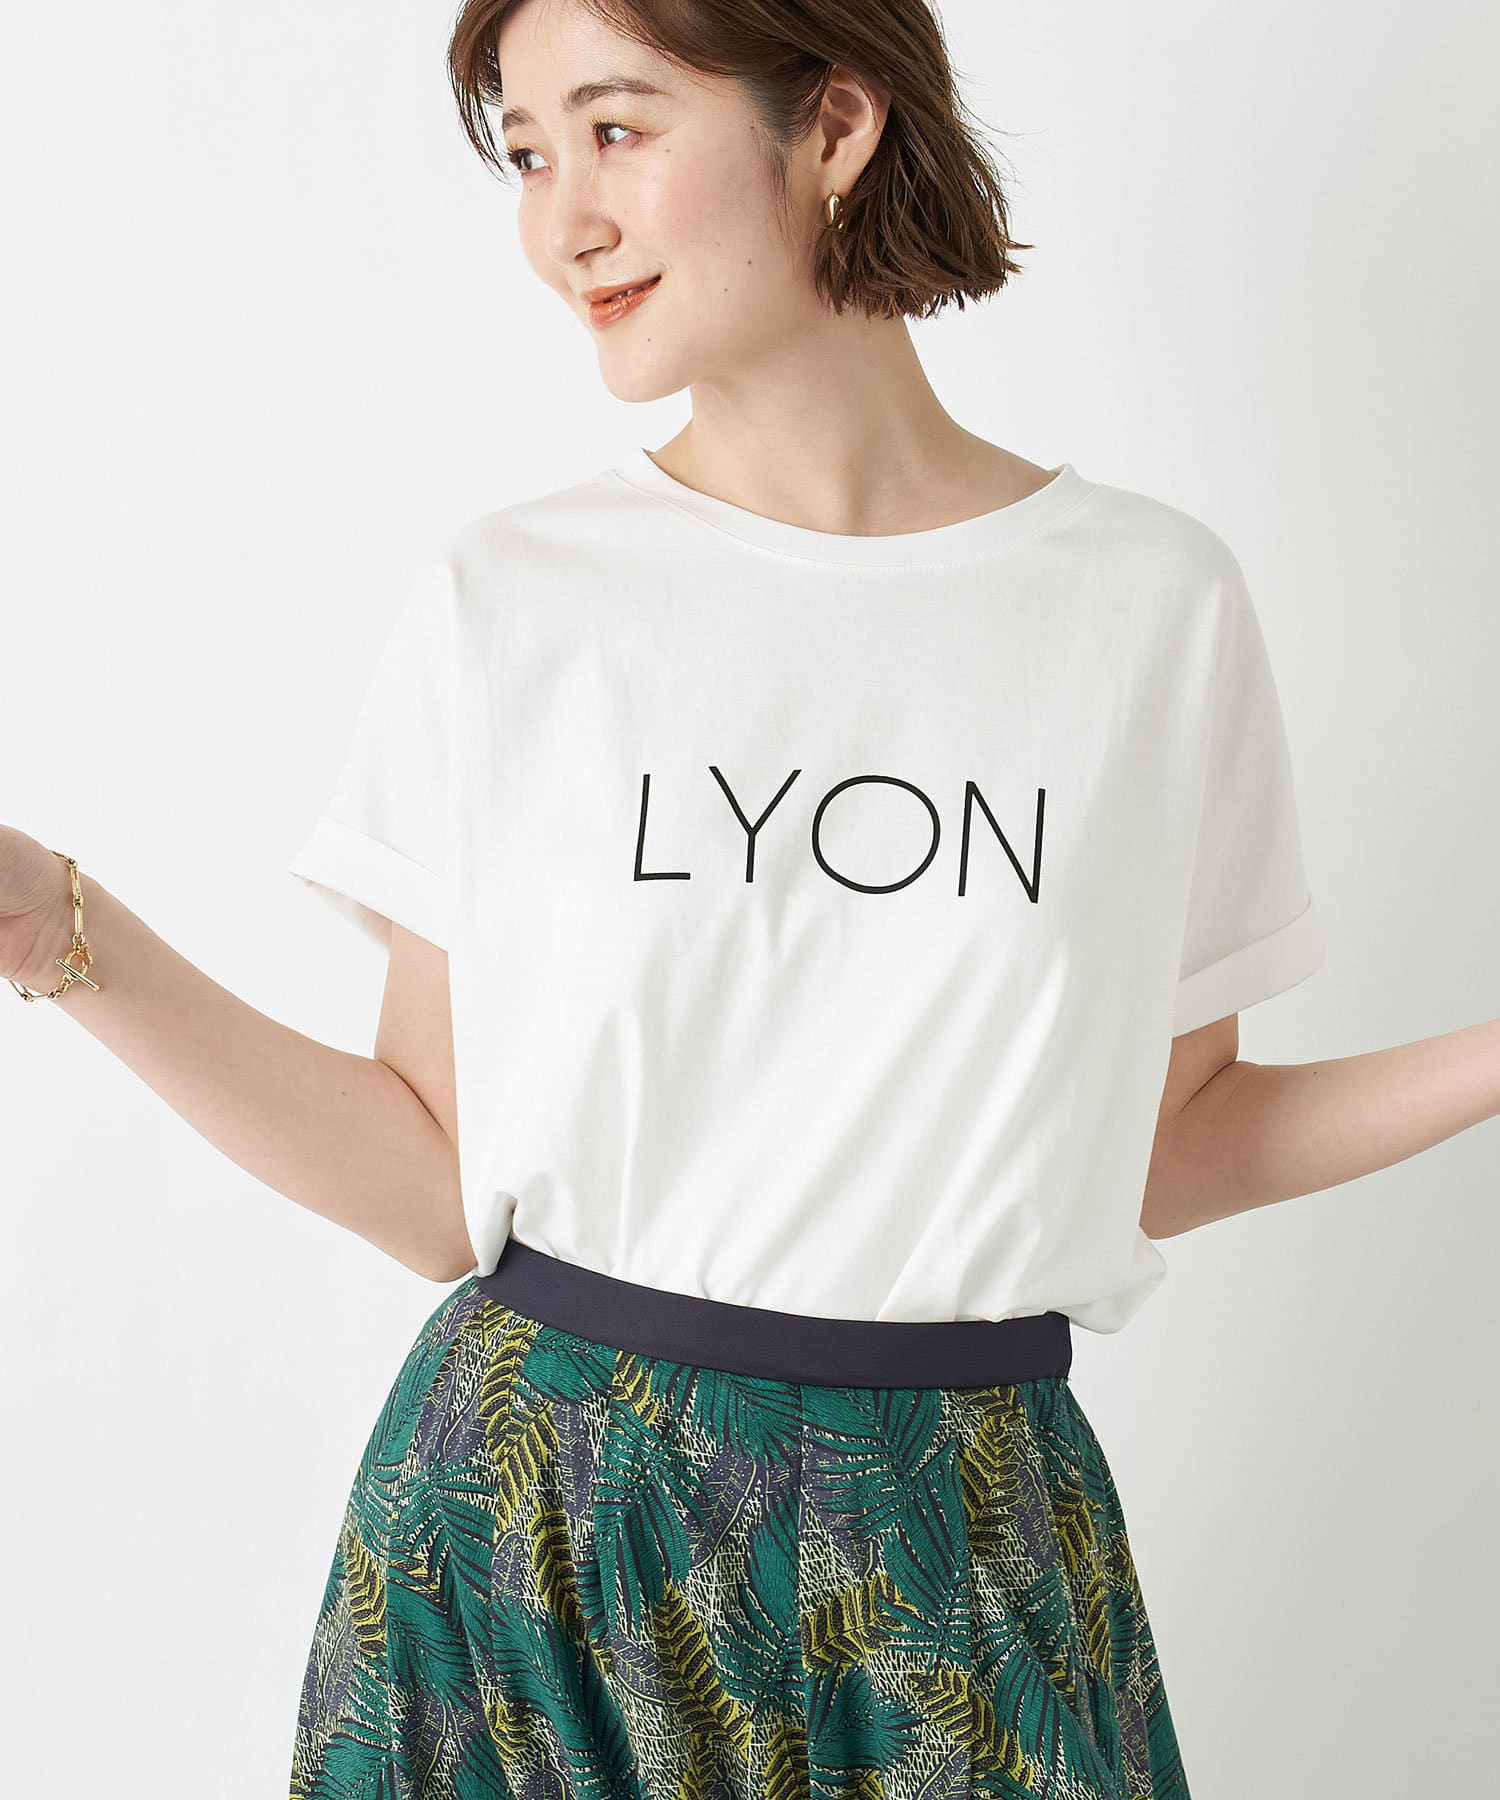 動画付き 華奢なロゴで大人な印象に 洗える Lyon半袖tシャツ Rive Droite リヴドロワ レディース Pal Closet パルクローゼット パルグループ公式ファッション通販サイト